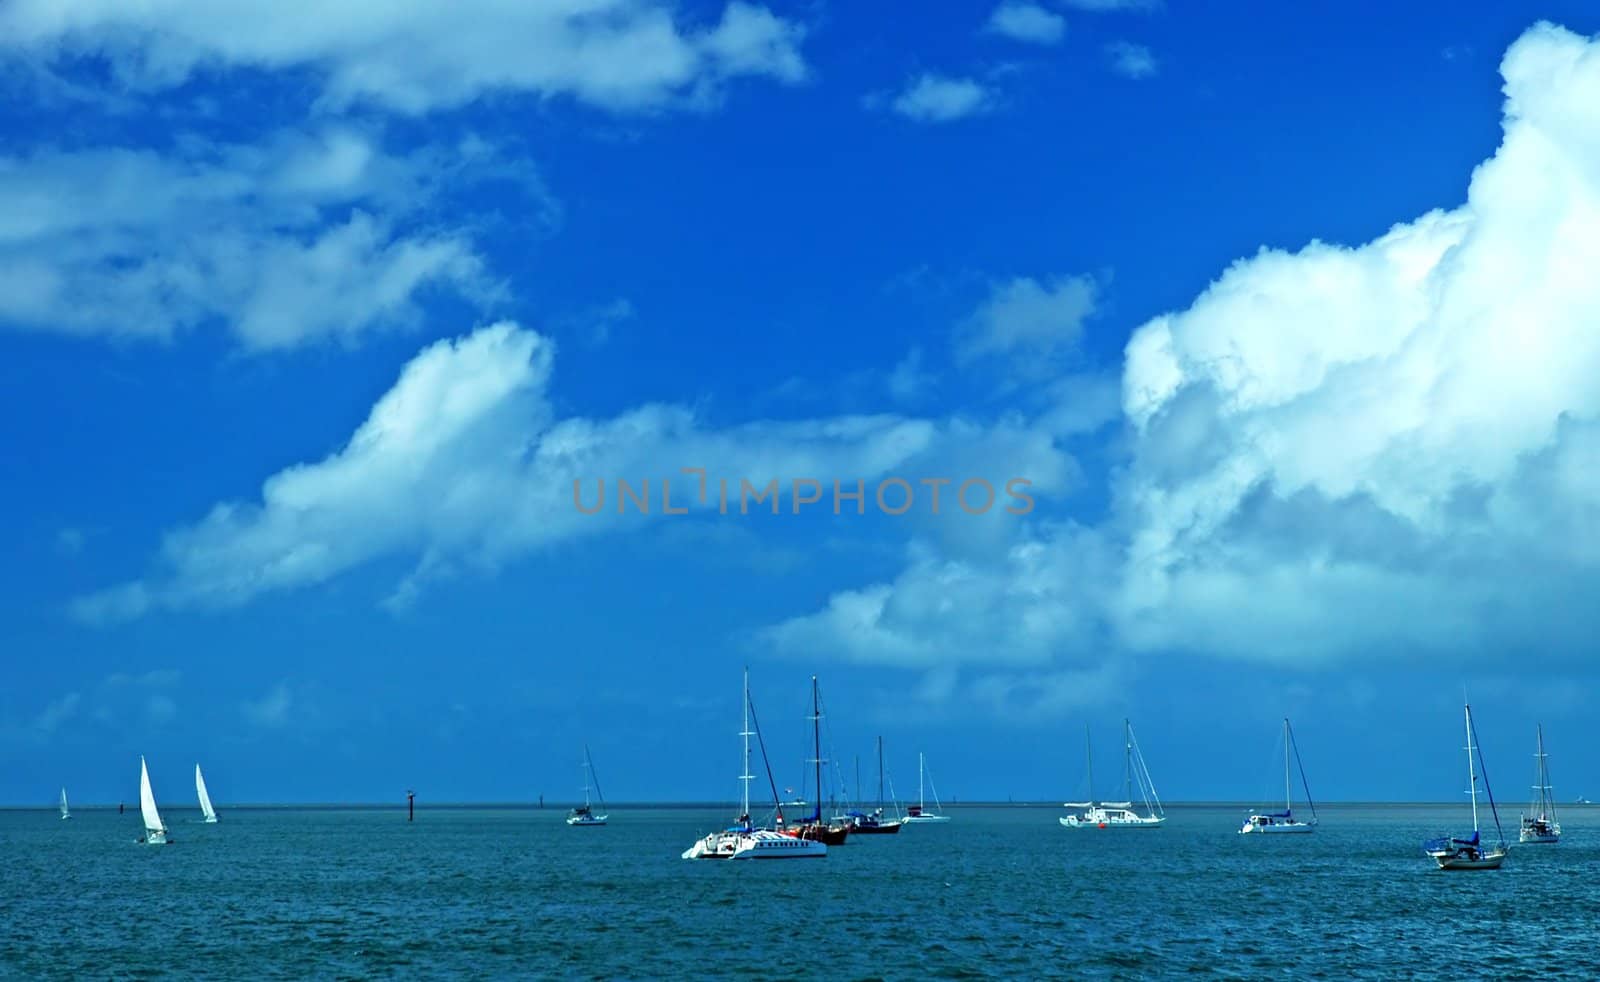 several anchoring sailboats; blue sky and water